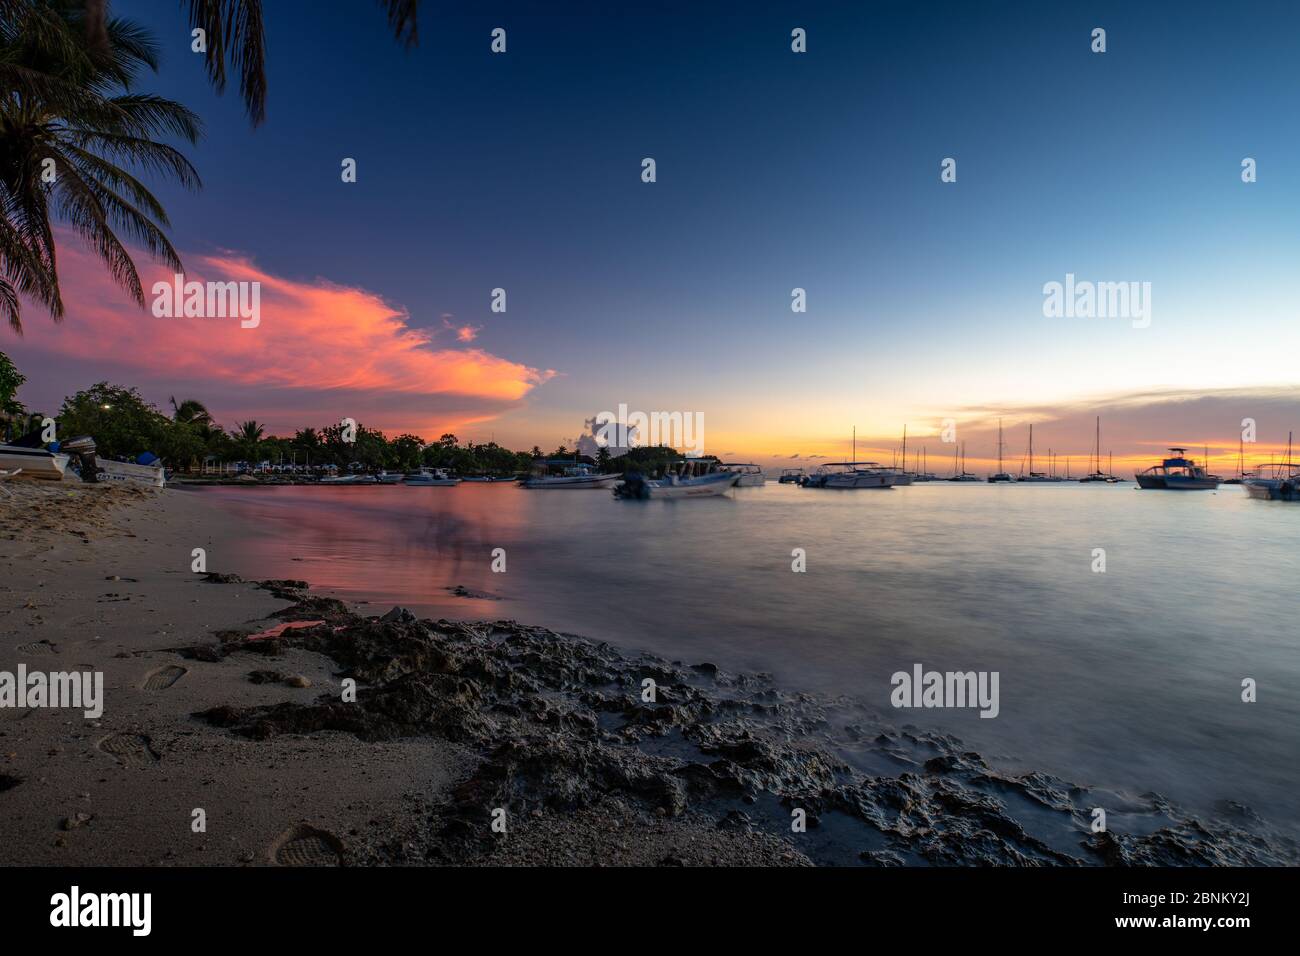 América, Caribe, Antillas mayores, República Dominicana, Provincia de la Altagracia, Bayahibe, puesta de sol caribeña en la Bahía de Bayahibe Foto de stock